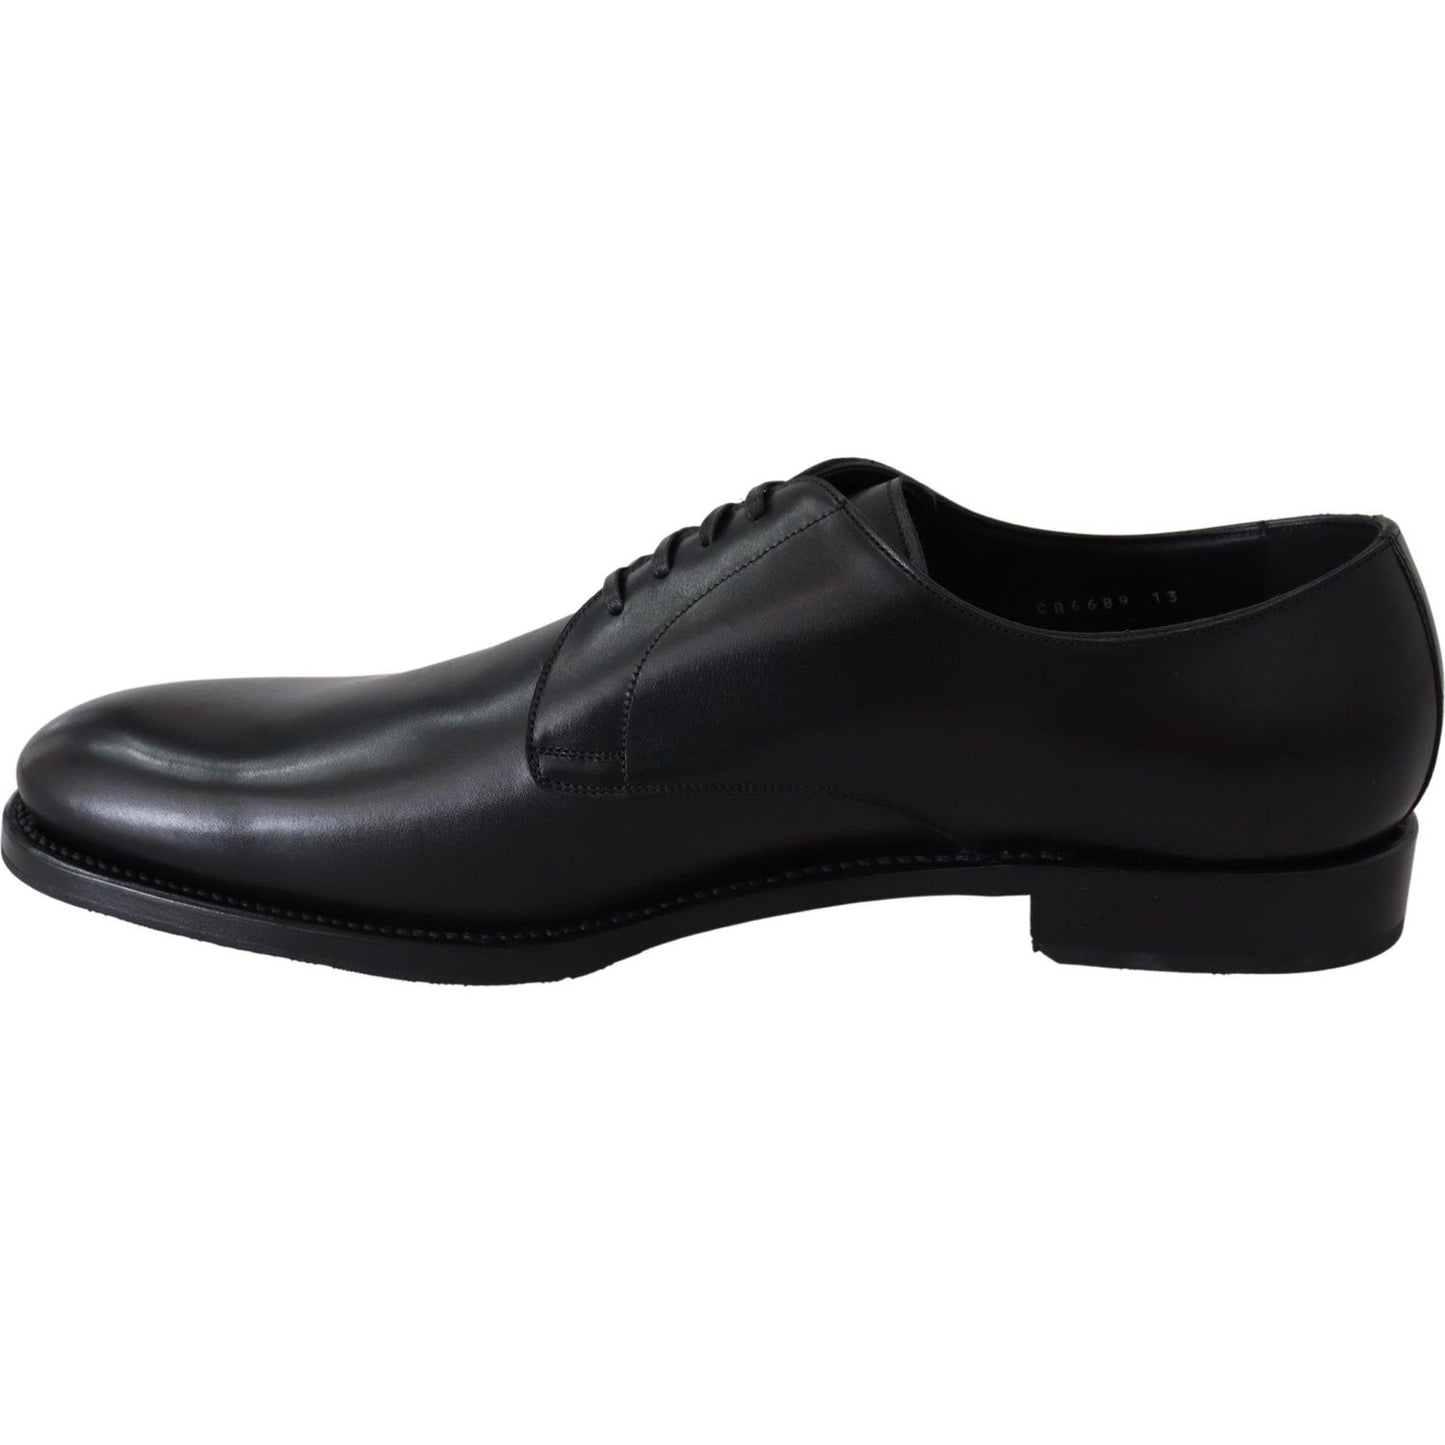 Dolce & Gabbana Elegant Black Leather Derby Dress Shoes Dress Shoes black-leather-sartoria-hand-made-shoes